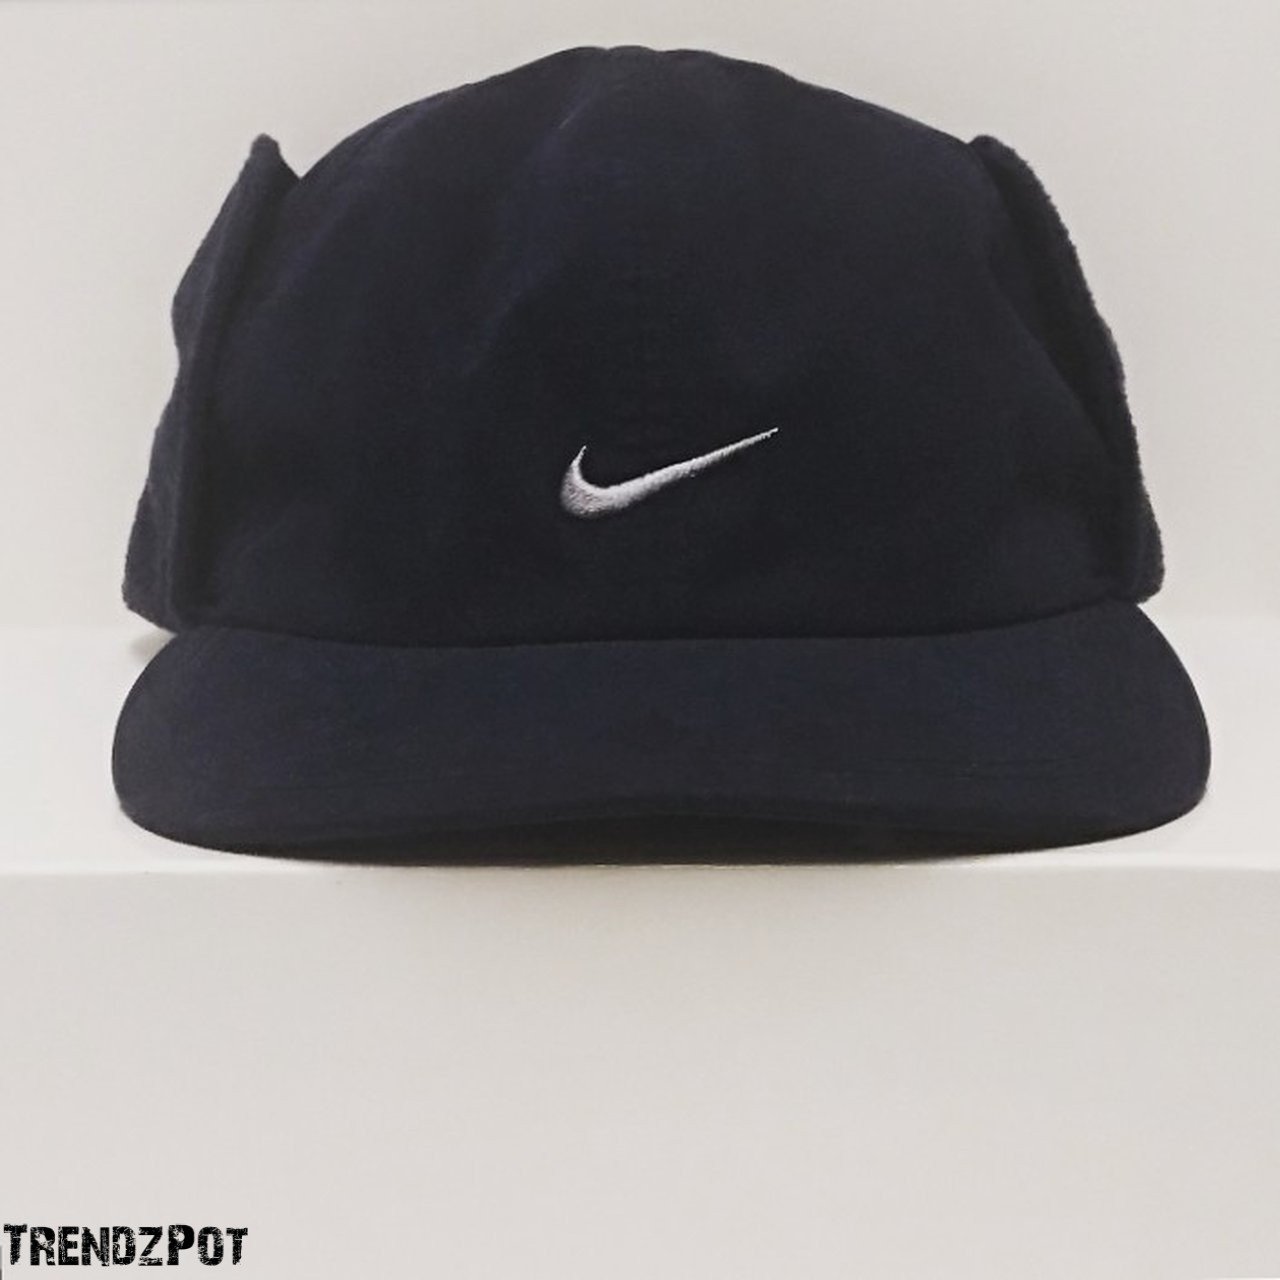 baseball cap with ear flaps nike